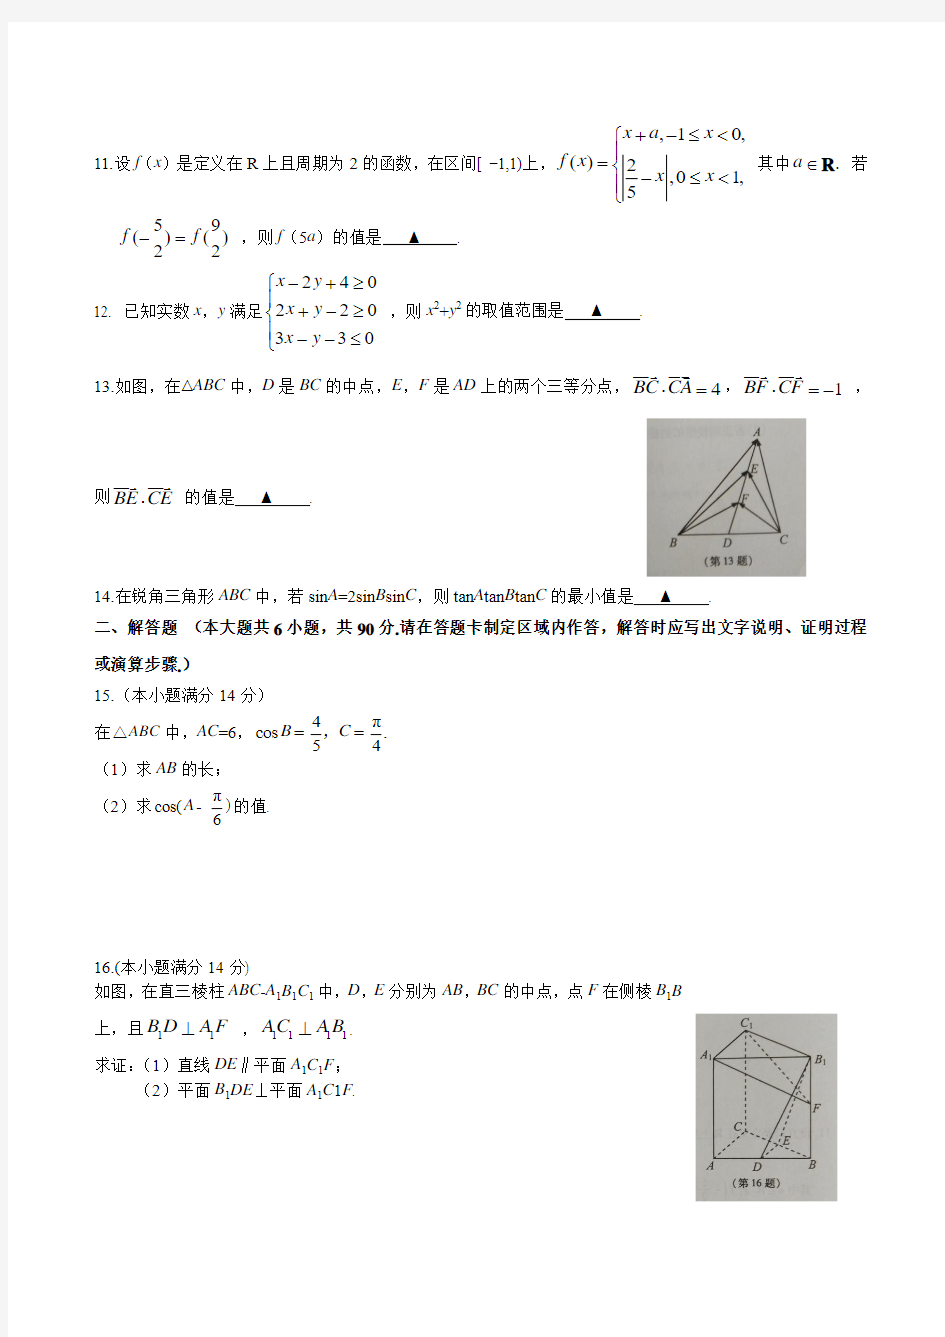 2016年高考真题——数学(江苏卷) 学生版